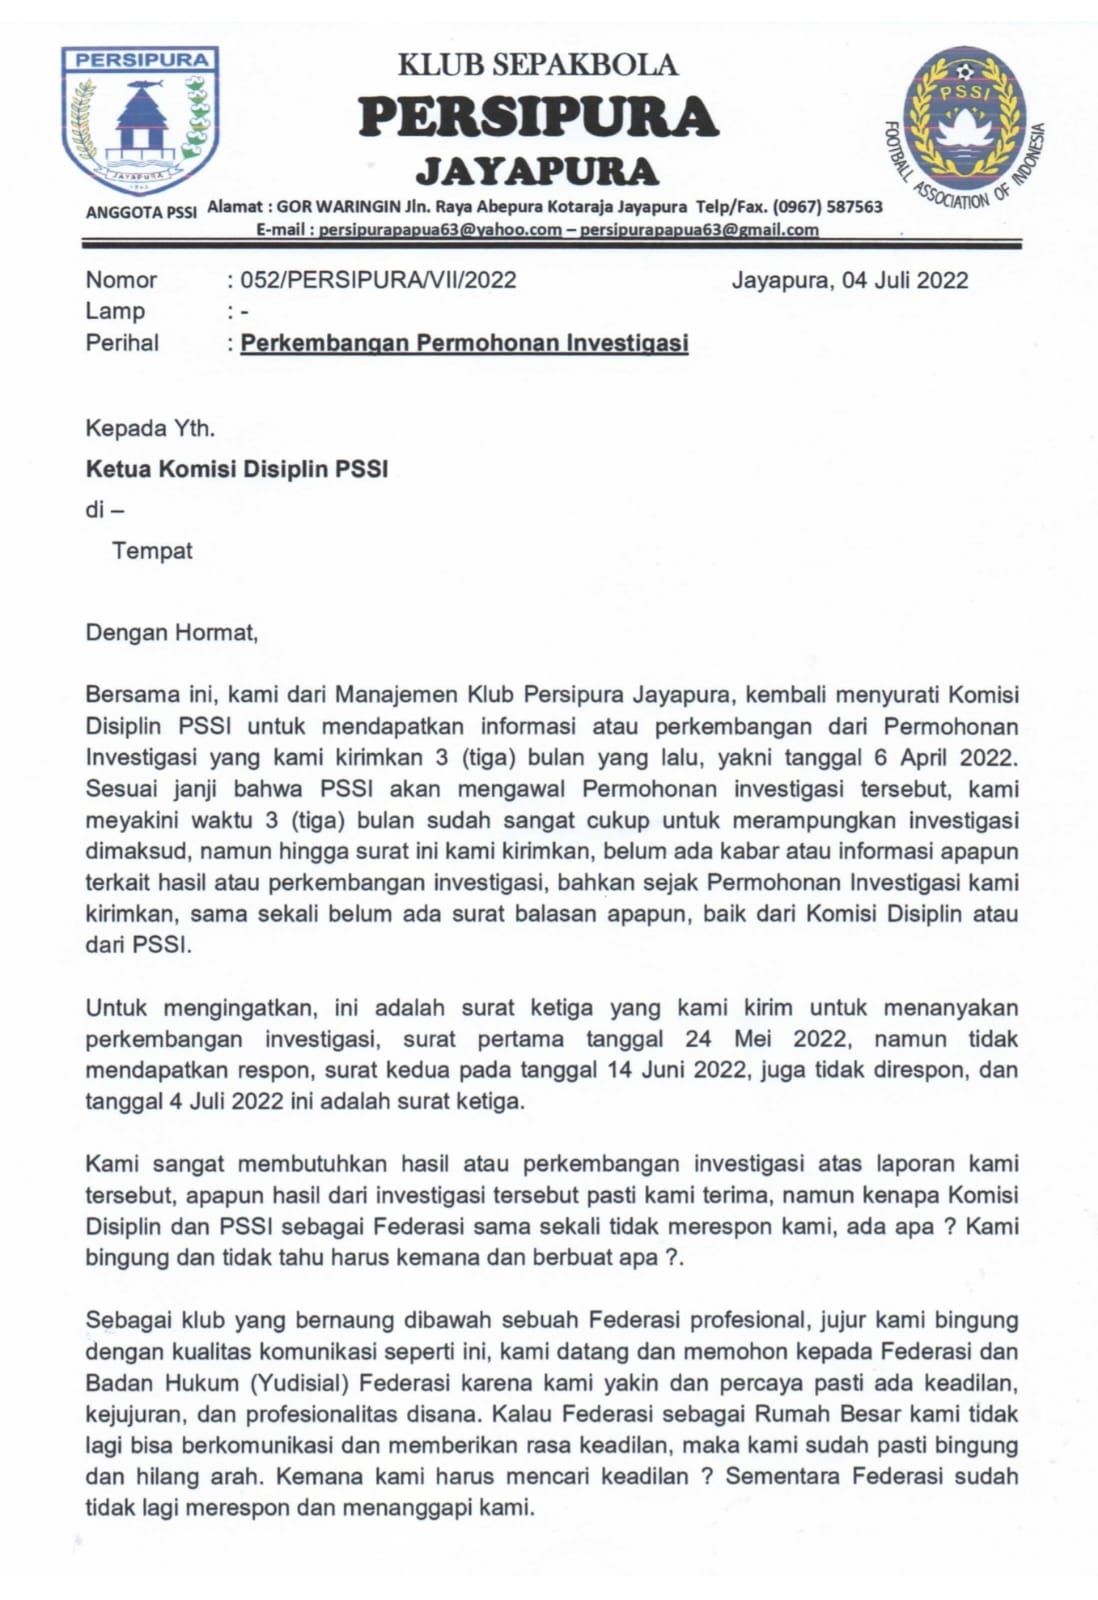 Surat ketiga yang dikirimkan Persipura ke PSSI untuk menanyakan hasil investigasi dua laga terakhir Liga 1 2021-2022.